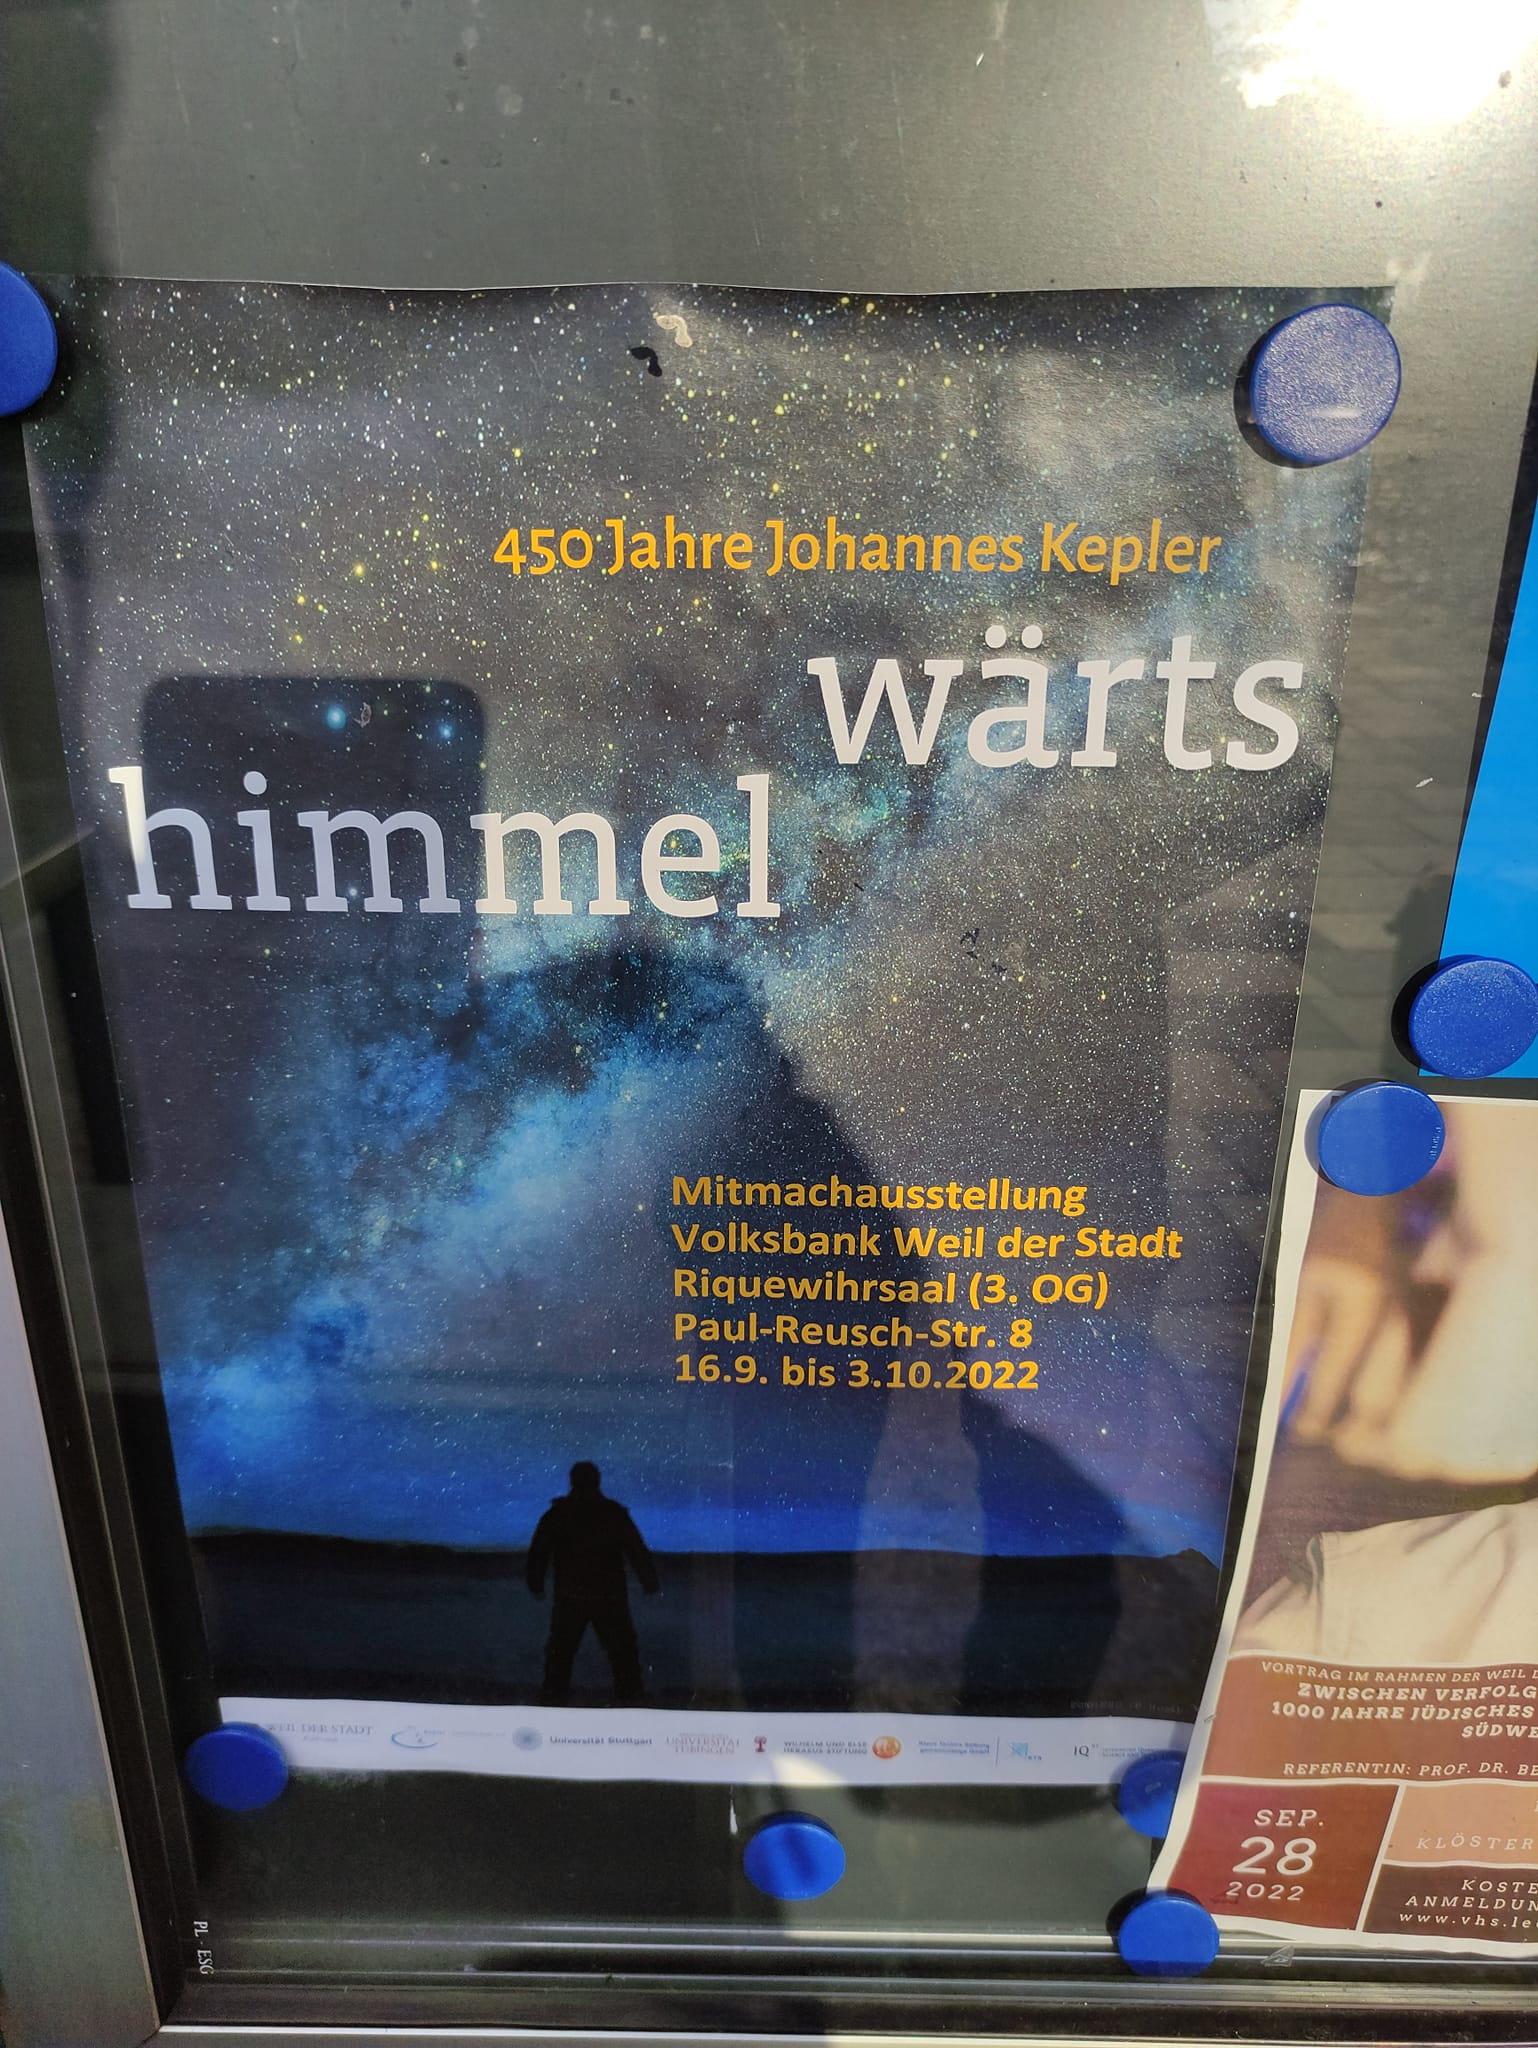 450 Jahre Johannes Kepler